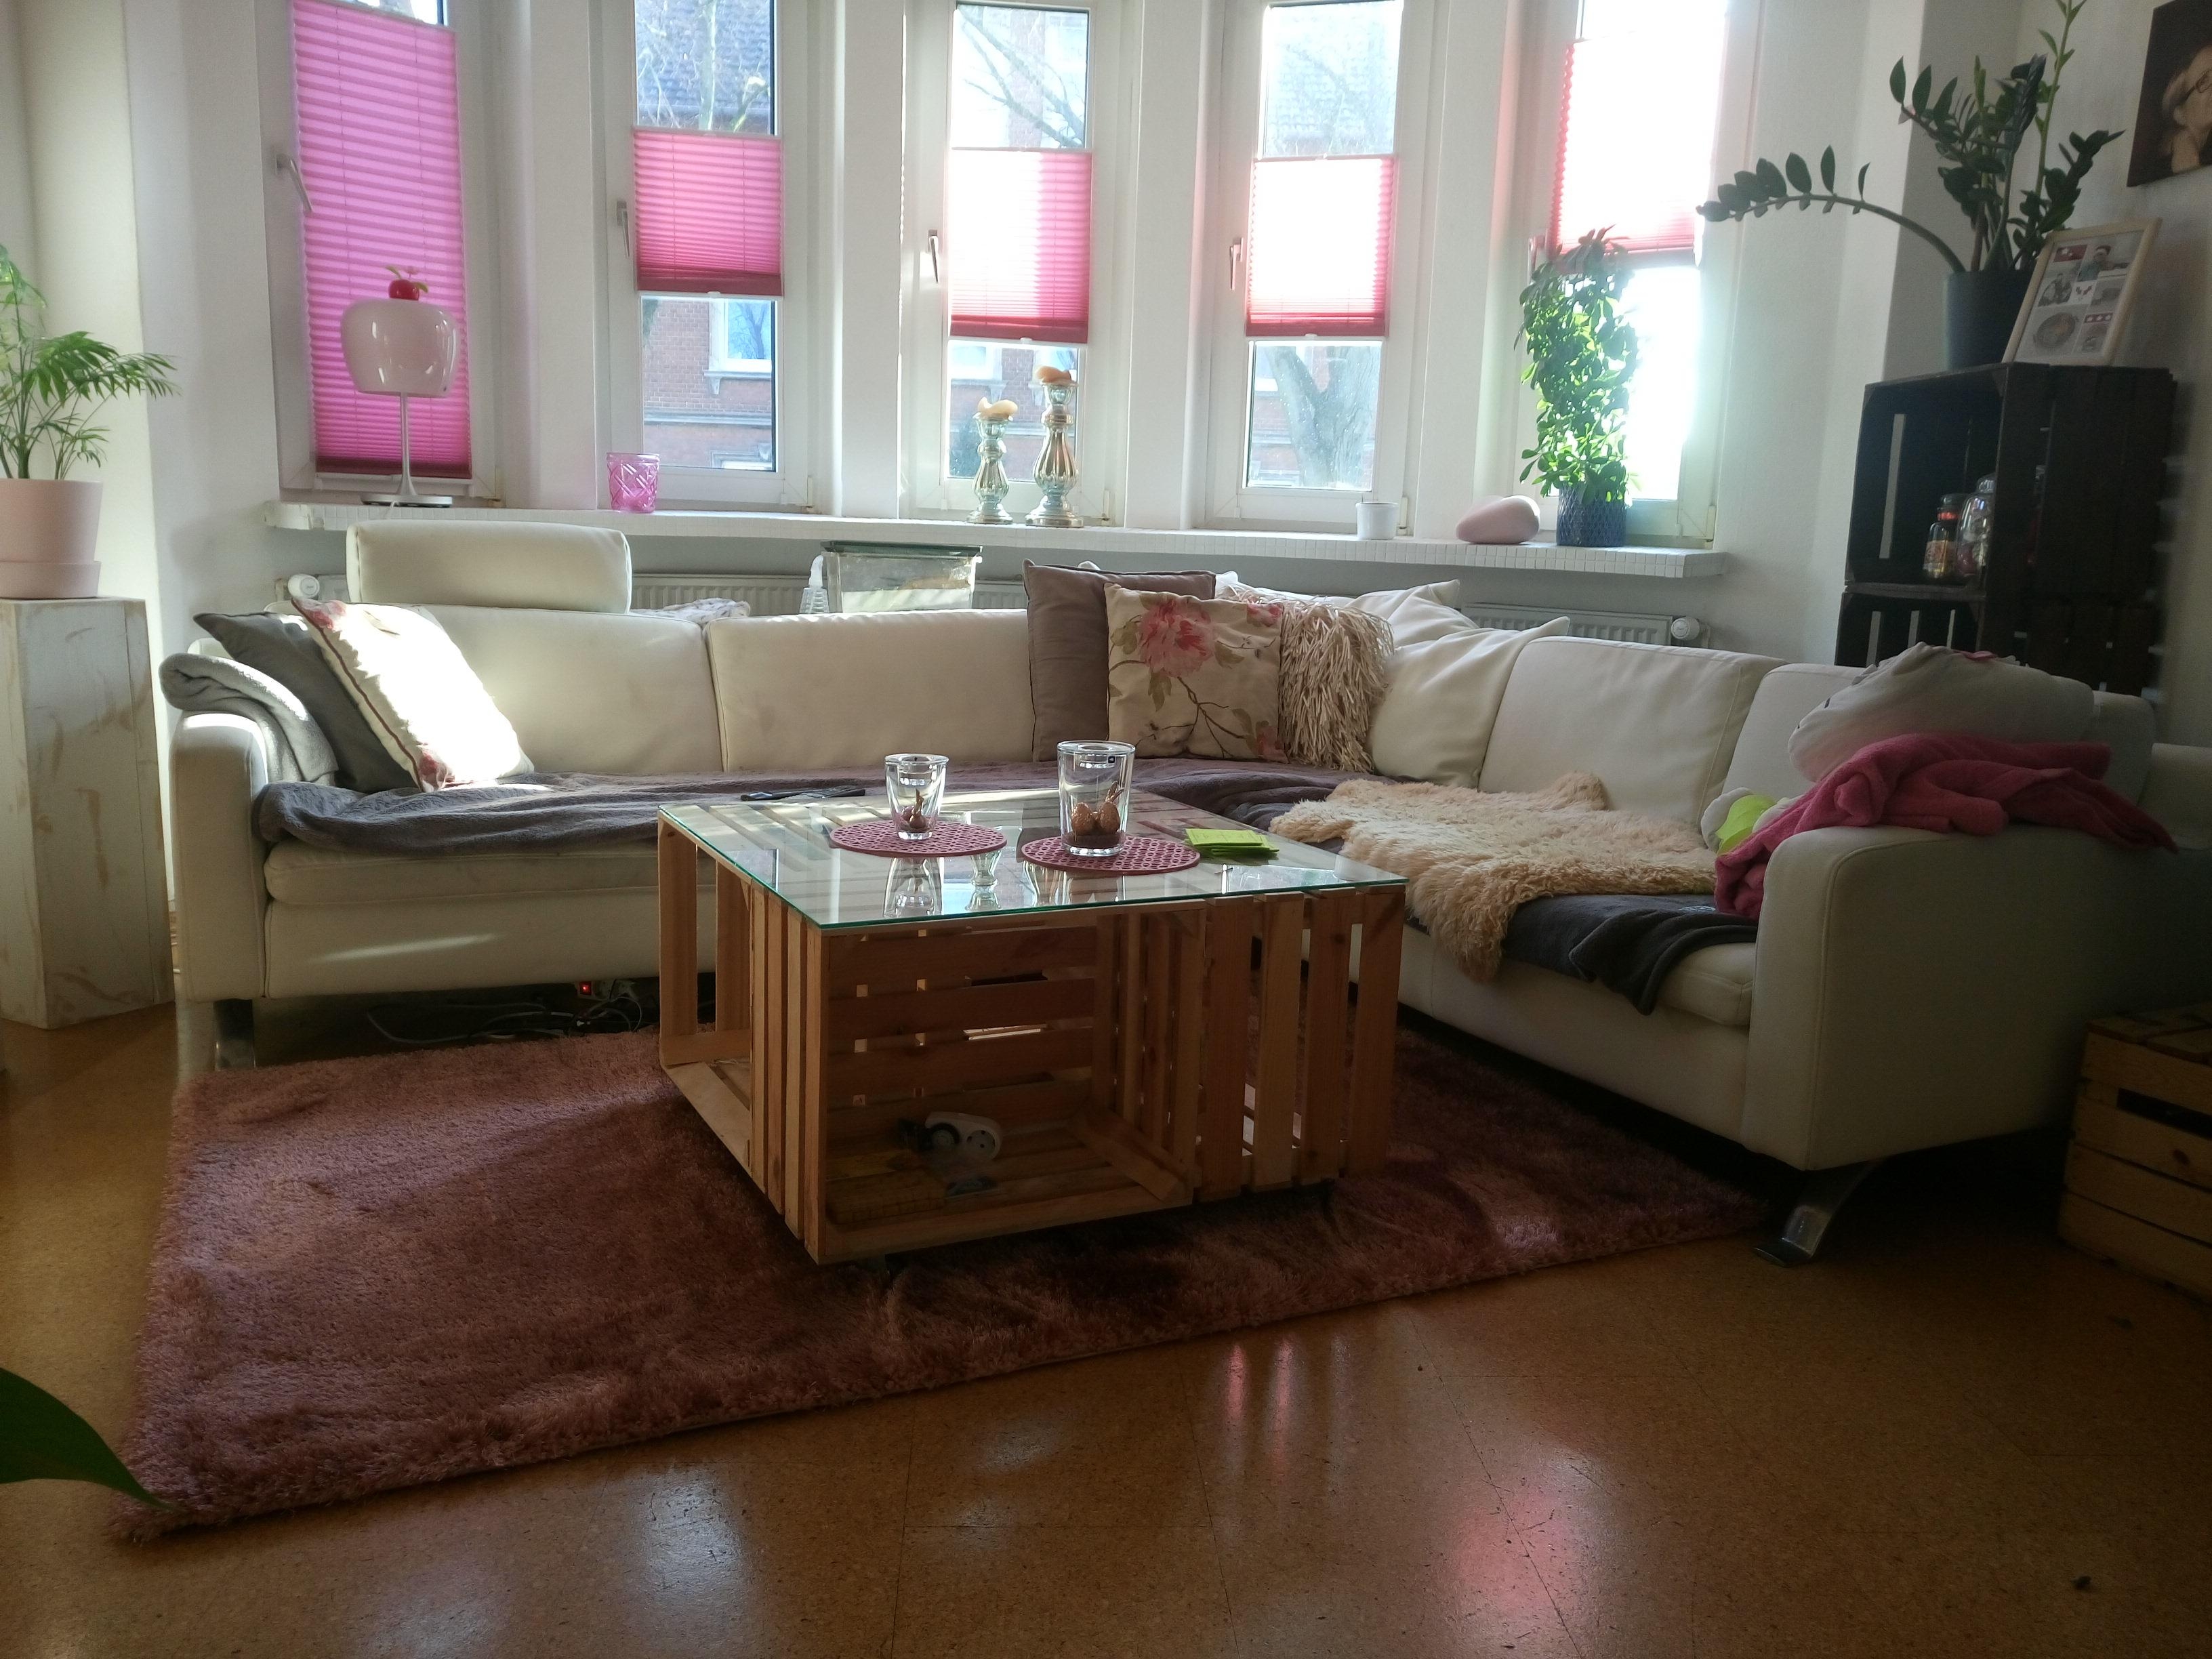 Unser wunderschönes #Wohnzimmer #weißes #Sofa mit #Plisees in #rosa #Tisch aus #obstkisten #diy #Teppich #Esprit 